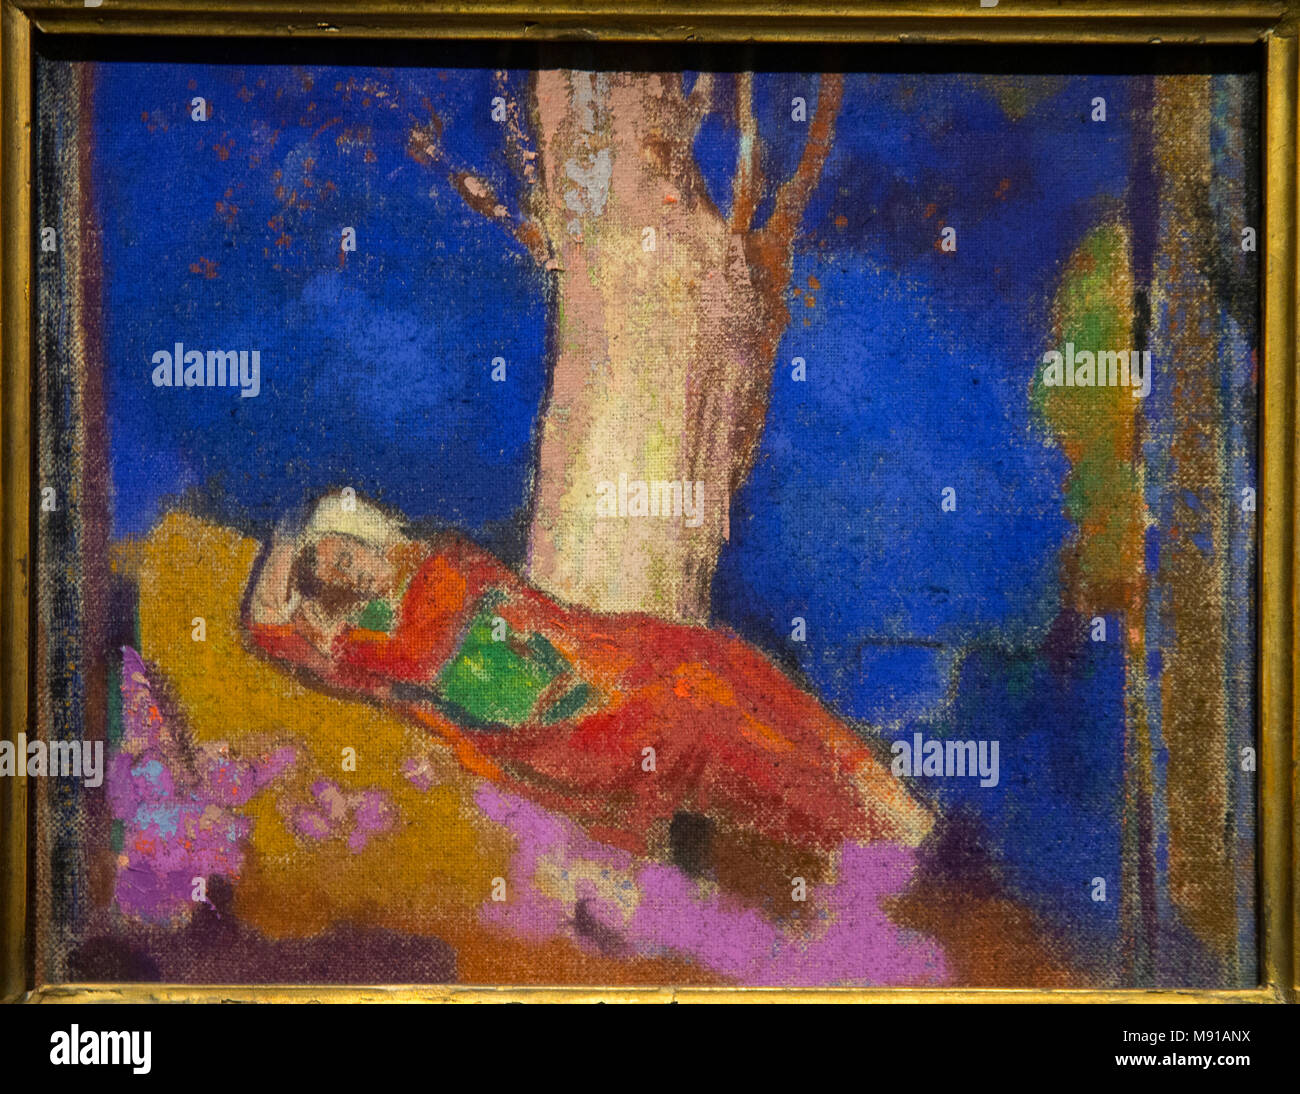 Odilon Redon, femme dormir sous un arbre, Paris, 1900-1901, huile sur toile. Collection Chtchoukine, musée de l'Ermitage, Saint-Pétersbourg. Une balle pendant qu'expose Banque D'Images